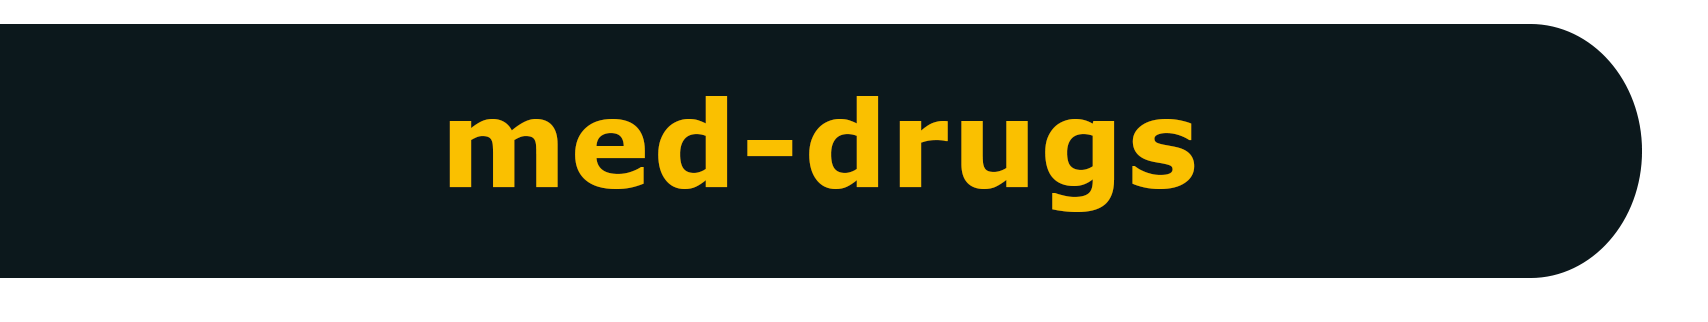 logo_med-drugs